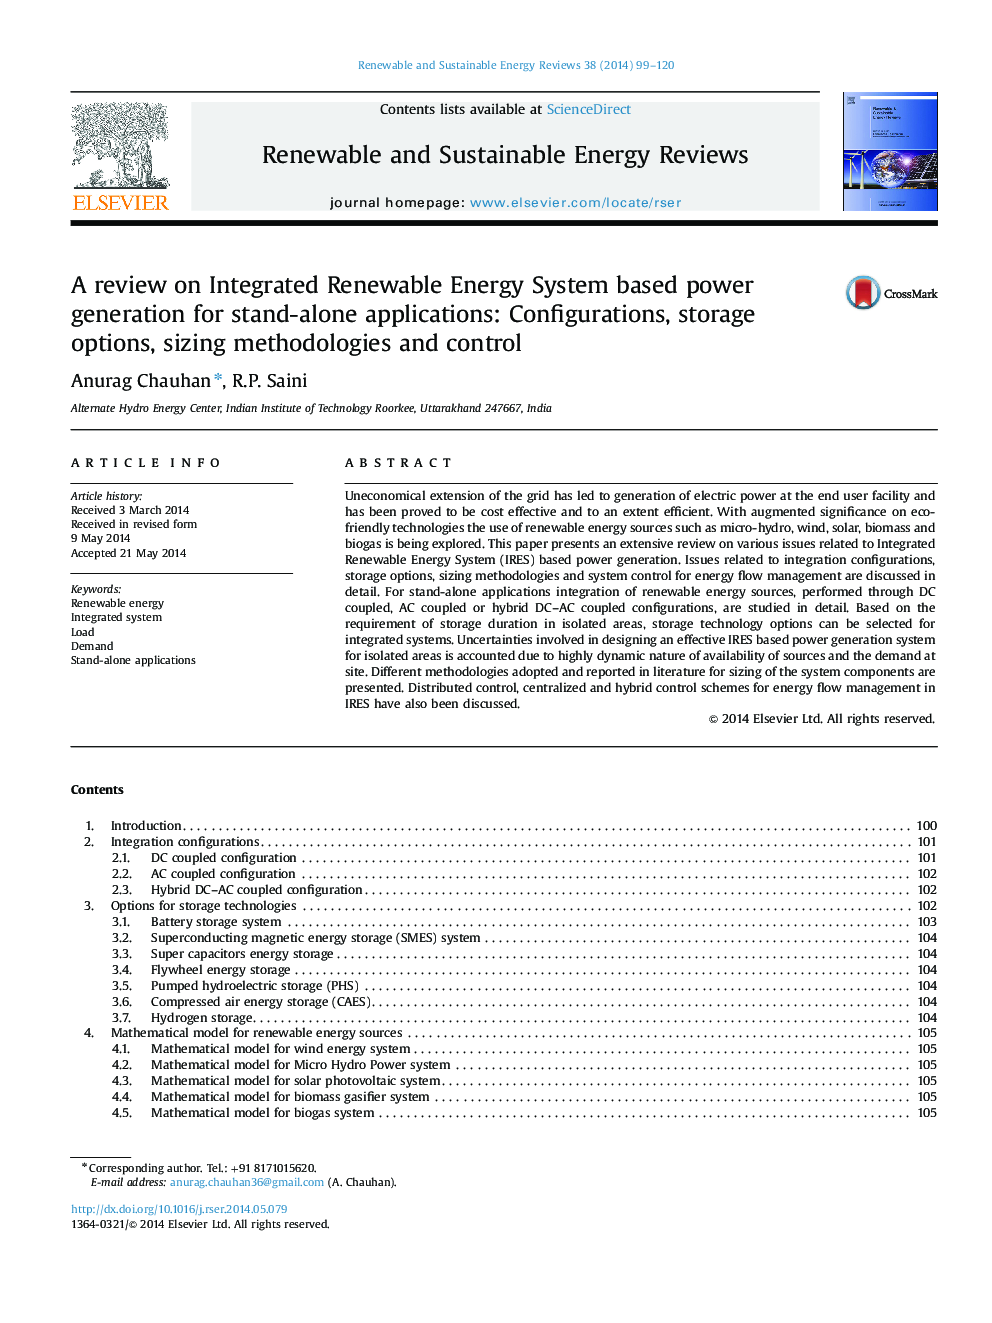 بررسی در مورد تولید مجتمع انرژی بر اساس سیستم انرژی برای برنامه های کاربردی مستقل: تنظیمات، گزینه های ذخیره سازی، روش های اندازه گیری و کنترل 